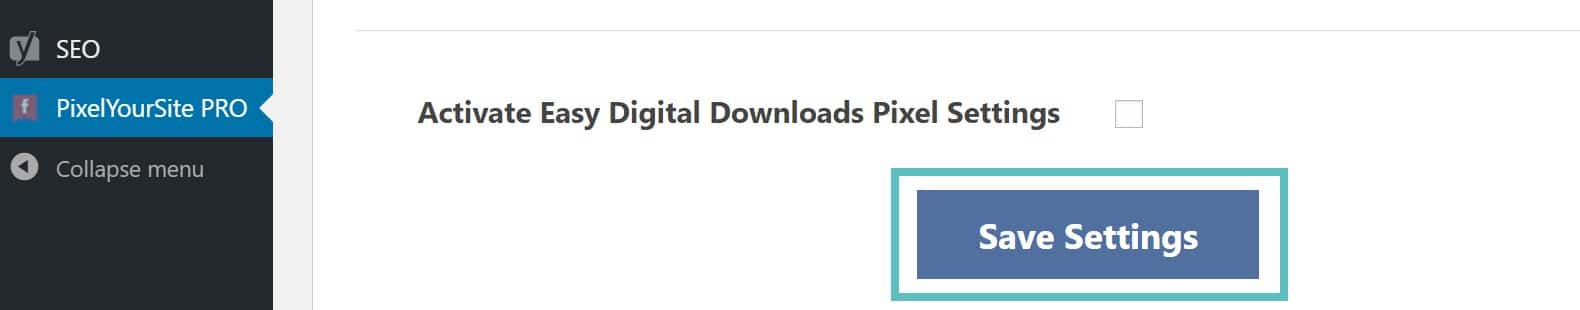 Ativar o pixel do Easy Digital Downloads